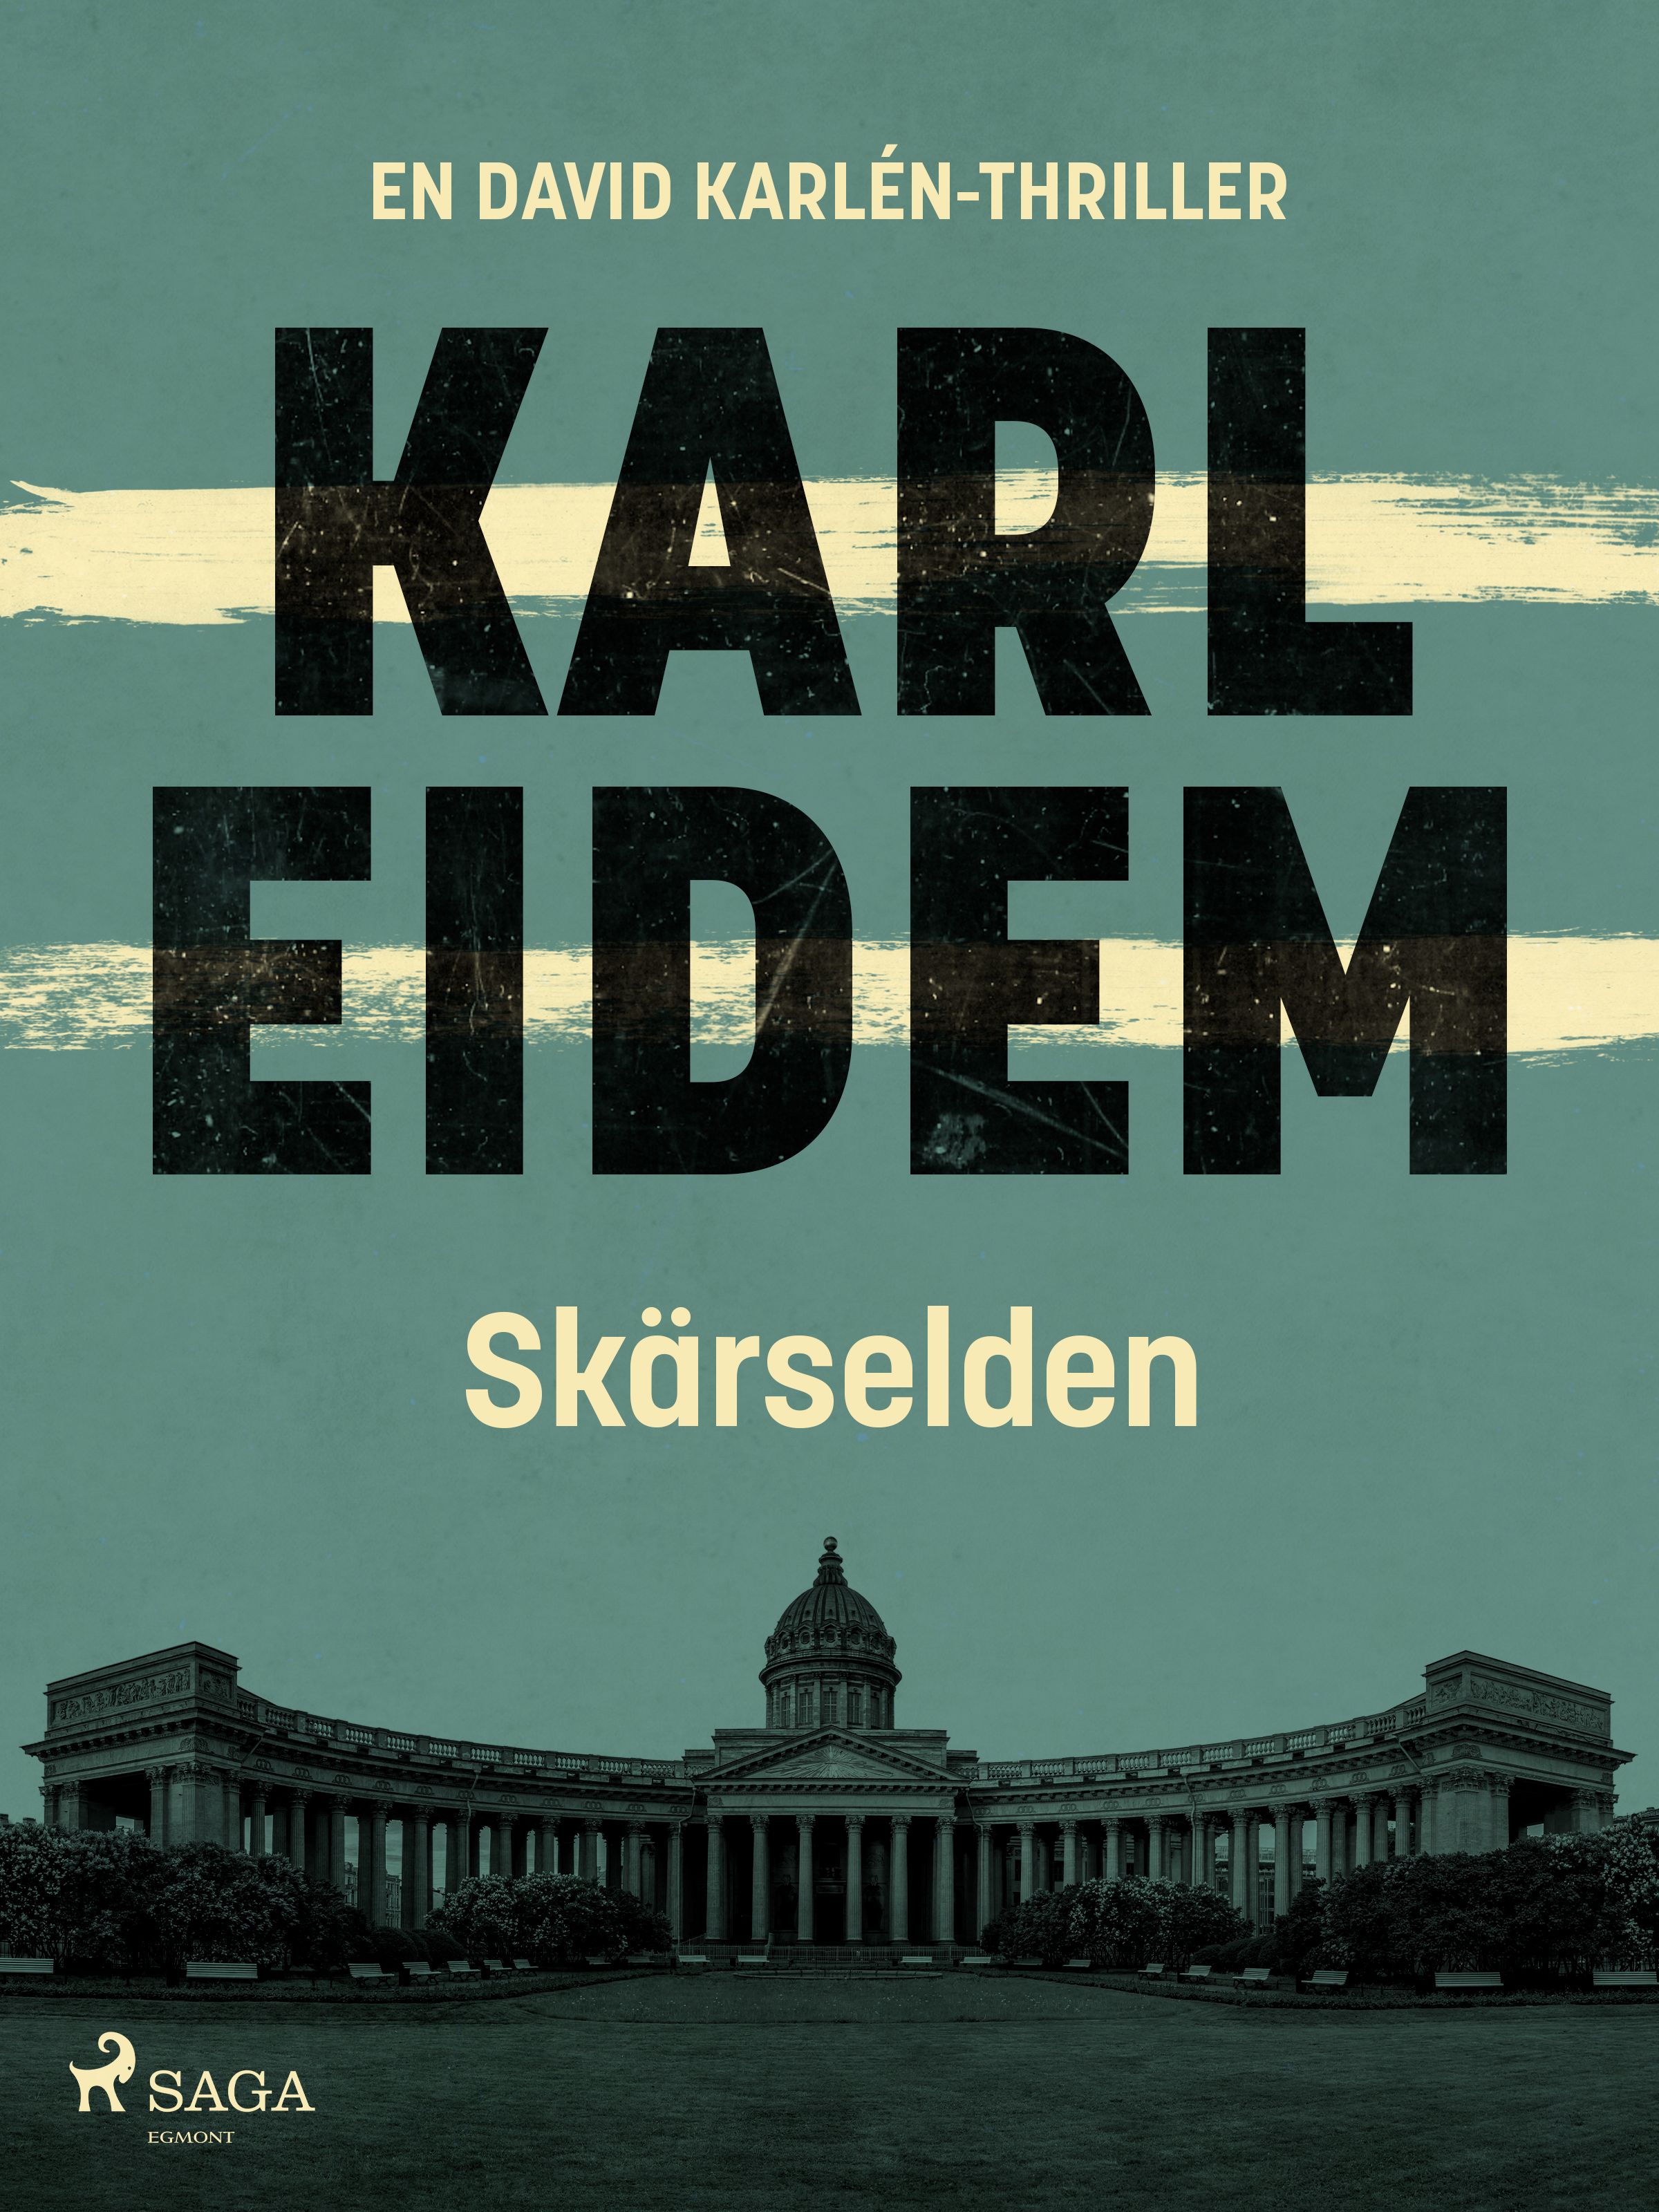 Skärselden, e-bok av Karl Eidem